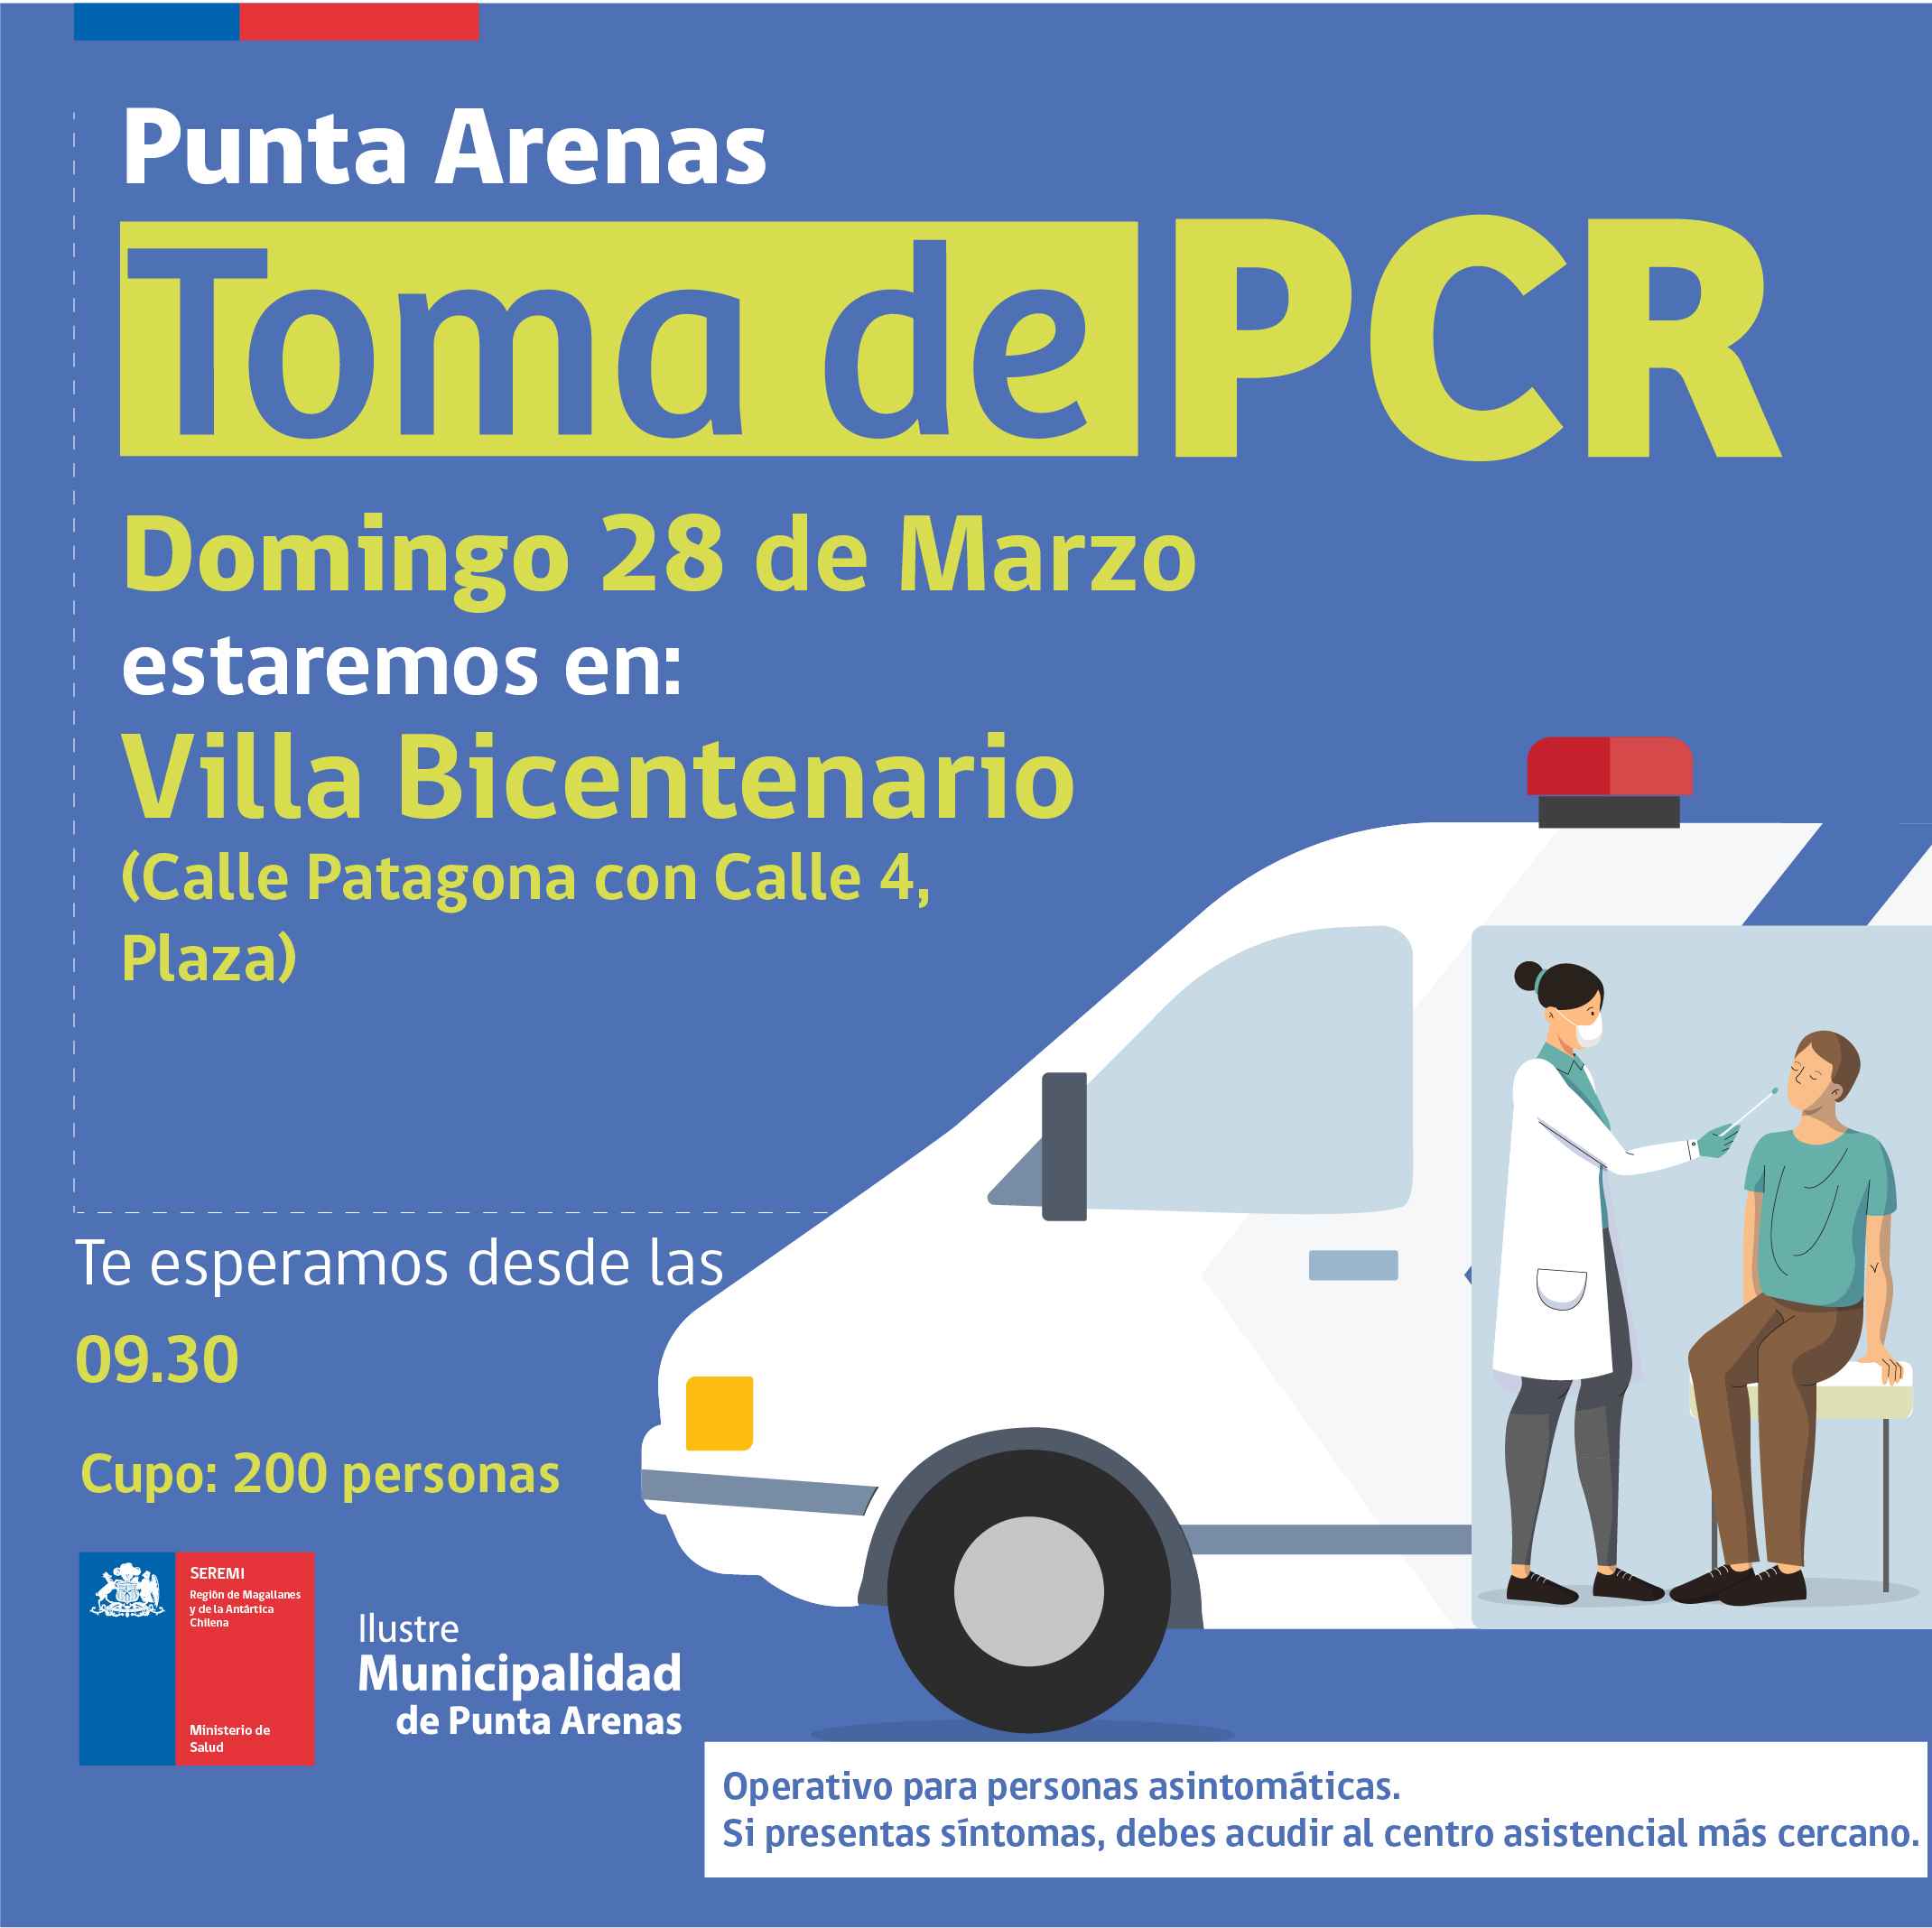 Toma de exámenes PCR se realiza este domingo en Punta Arenas